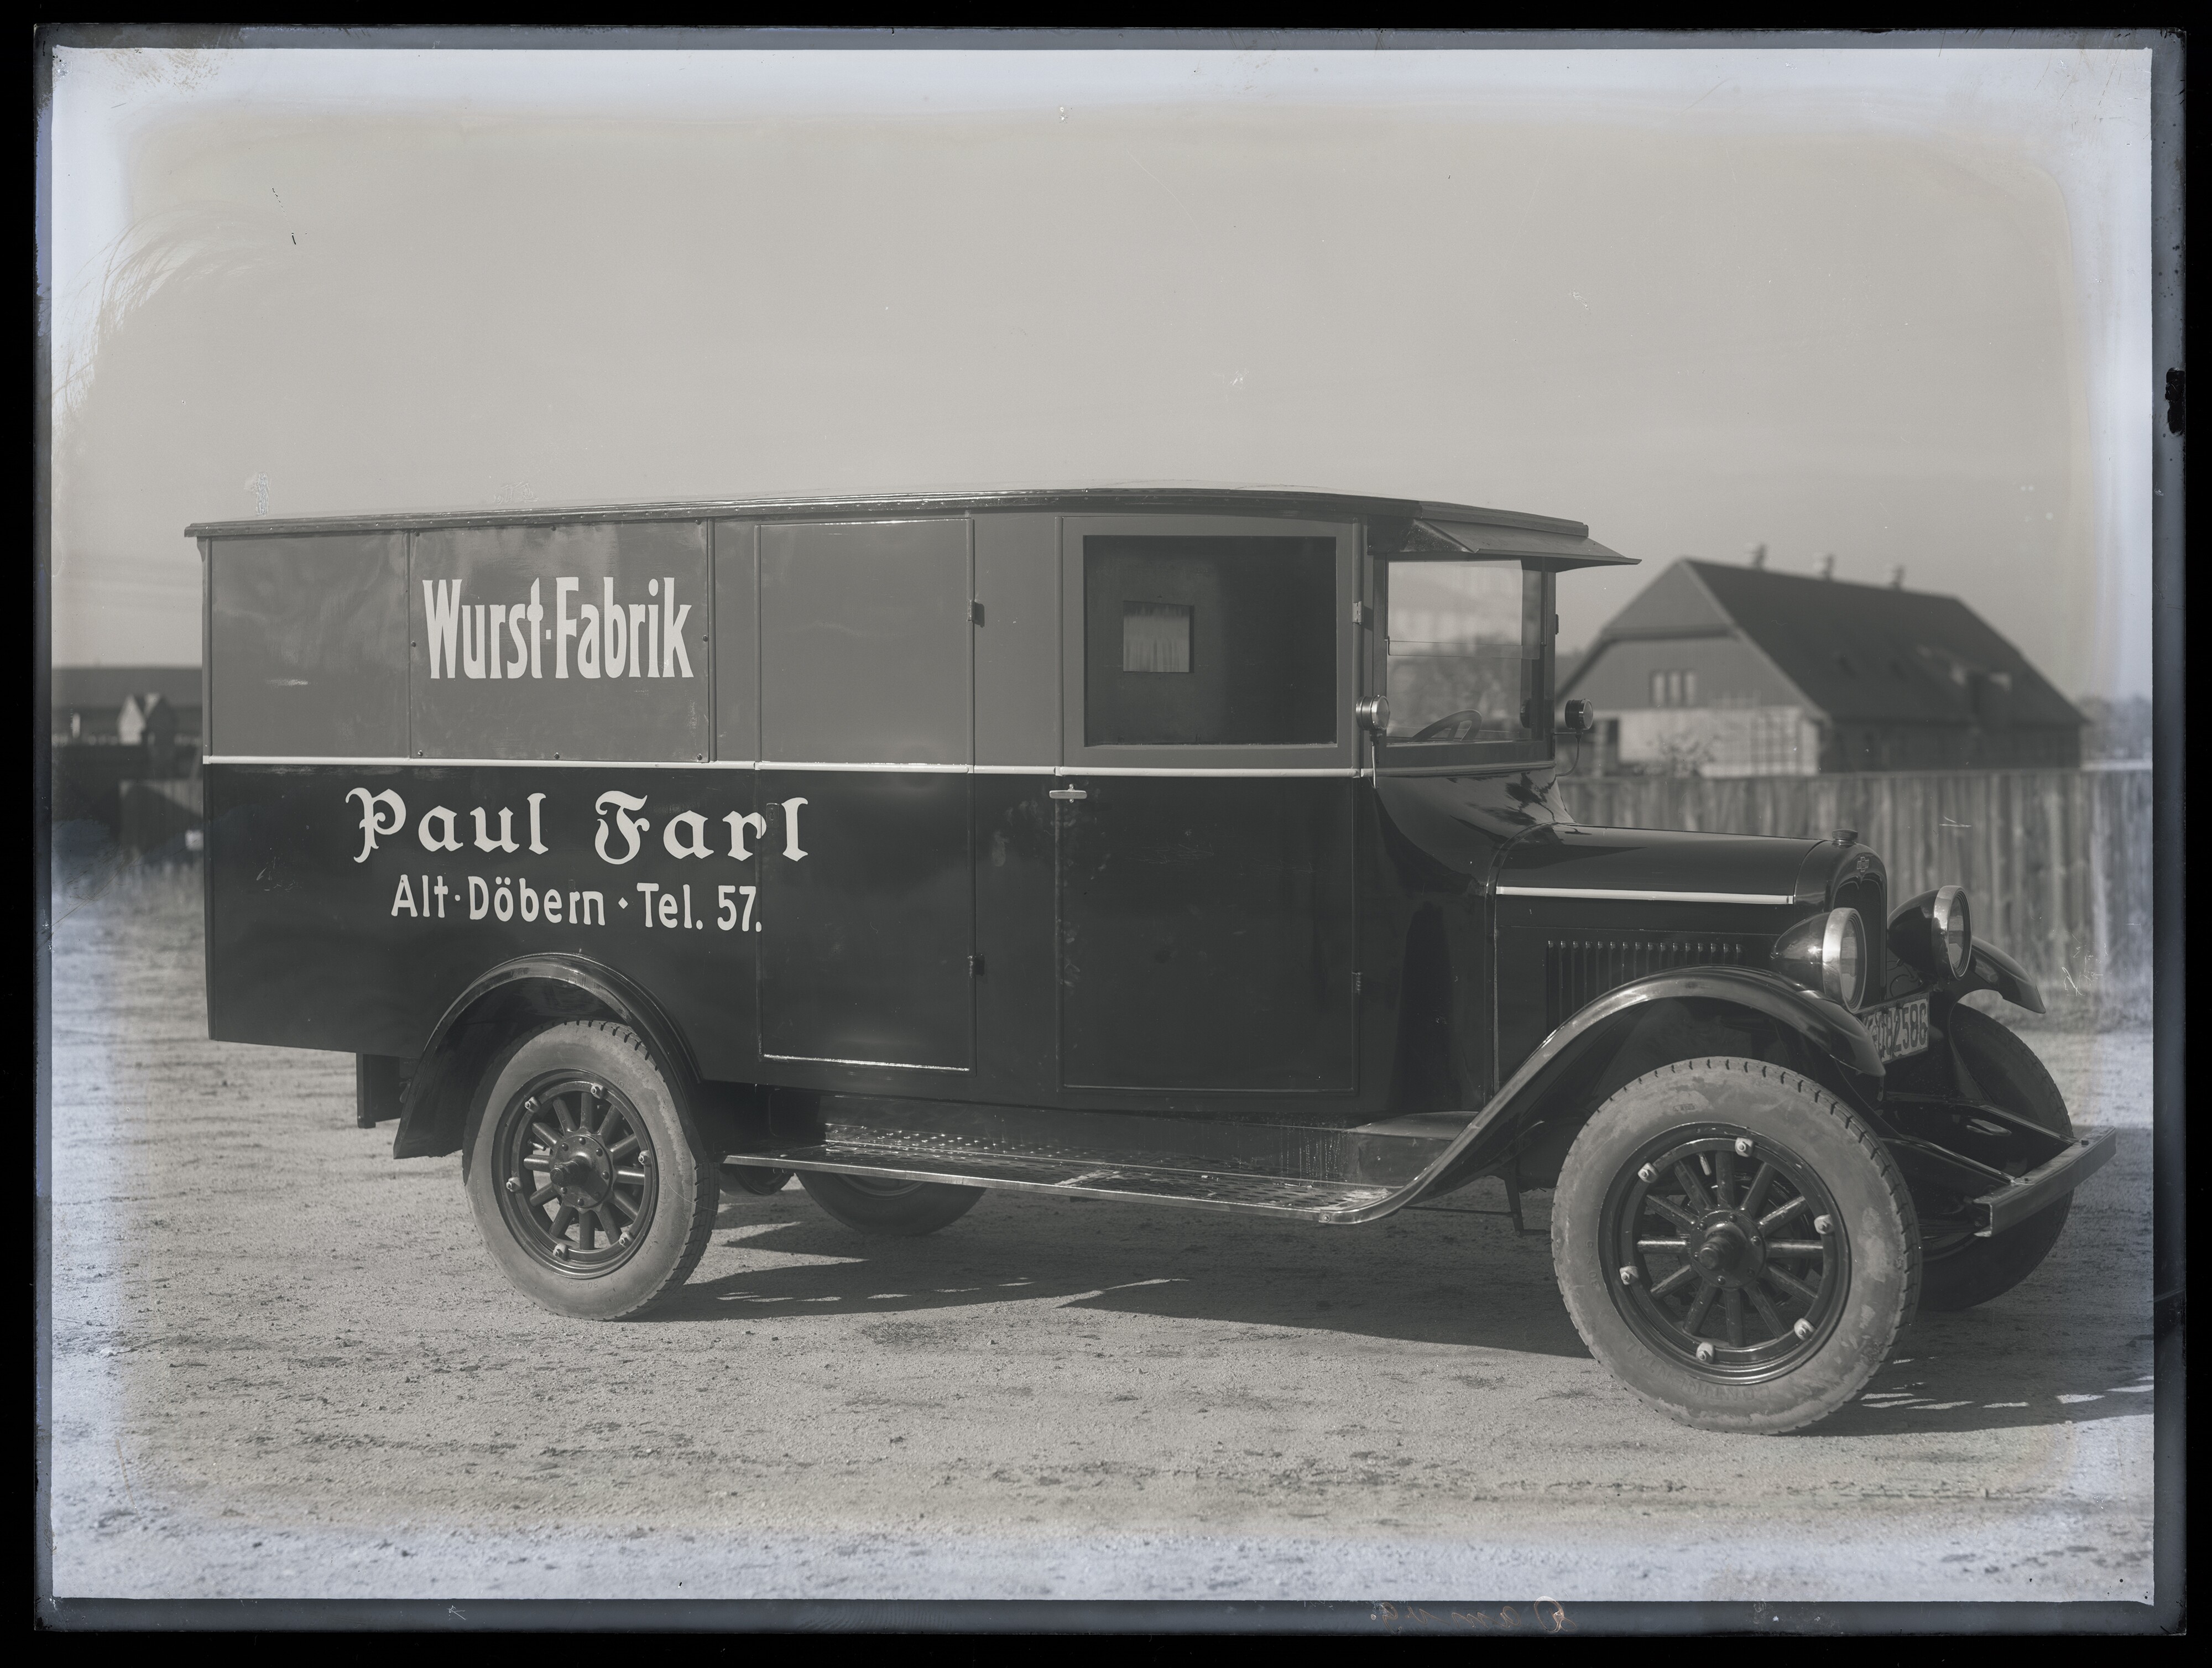 Lieferwagen der Wurst-Fabrik Paul Farl aus Alt-Döbern (Stadtmuseum Cottbus CC BY-NC-SA)